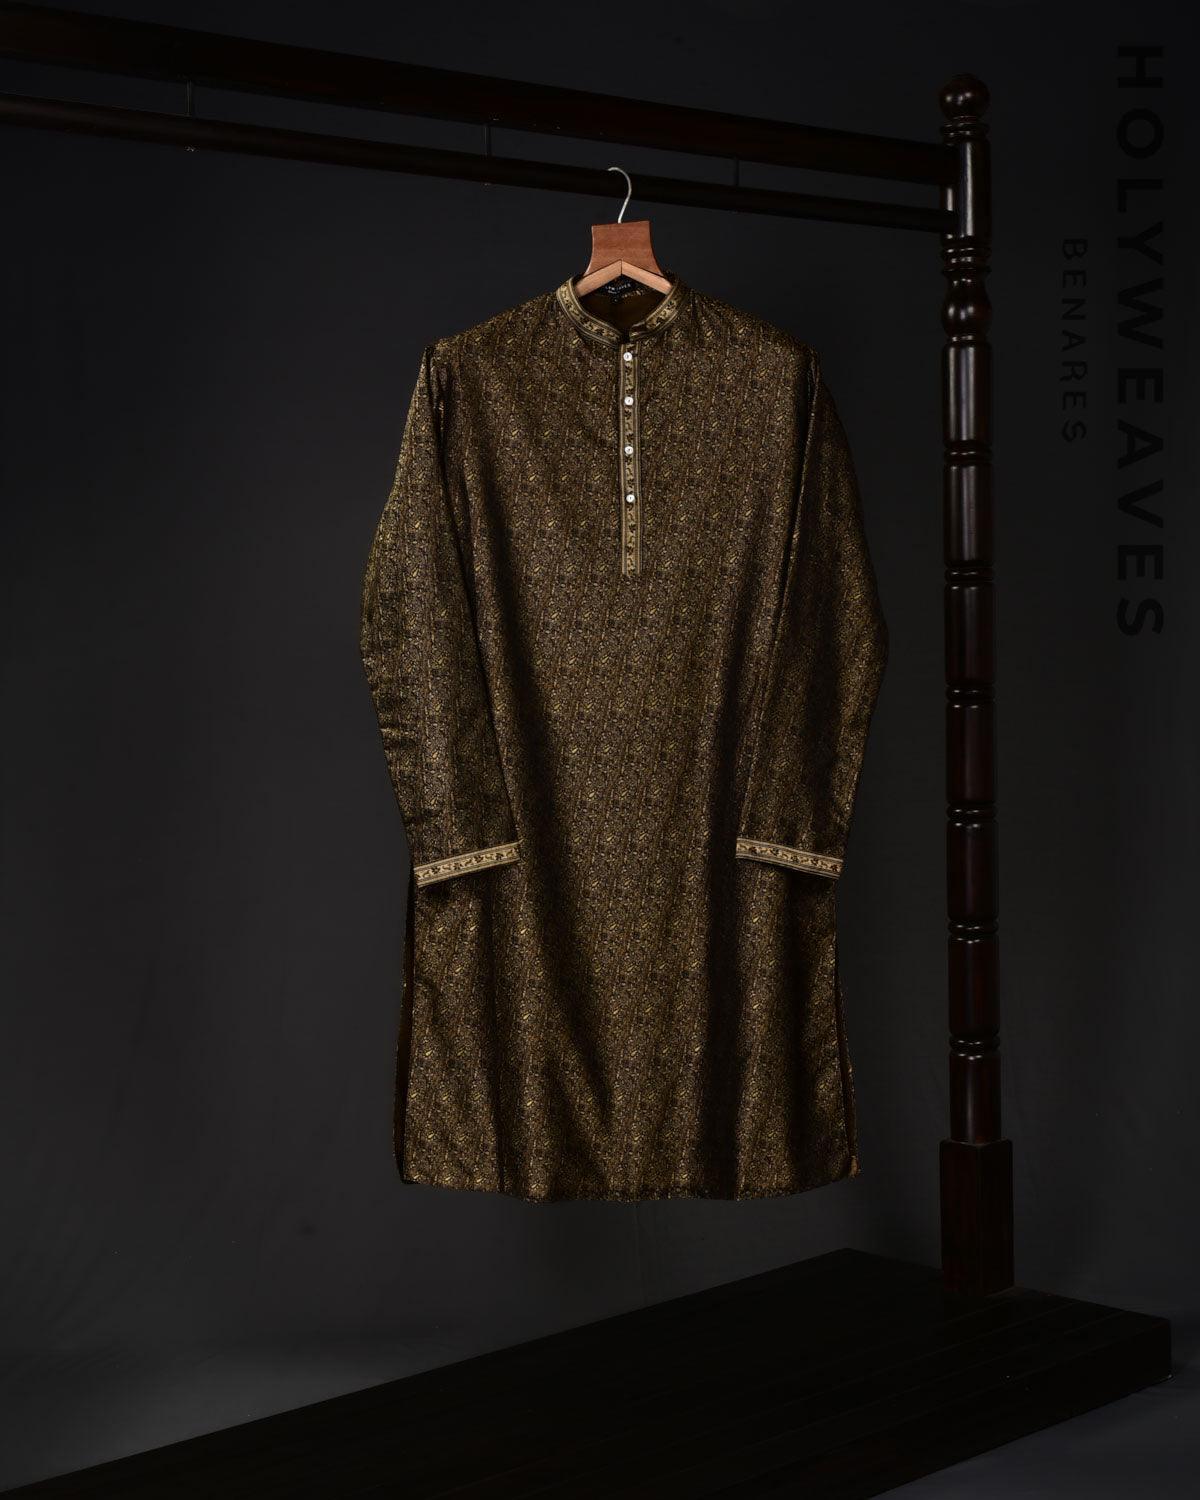 Black Banarasi Jamawar Brocade Handwoven Katan Silk Mens Kurta Pyjama with Zari Accents - By HolyWeaves, Benares